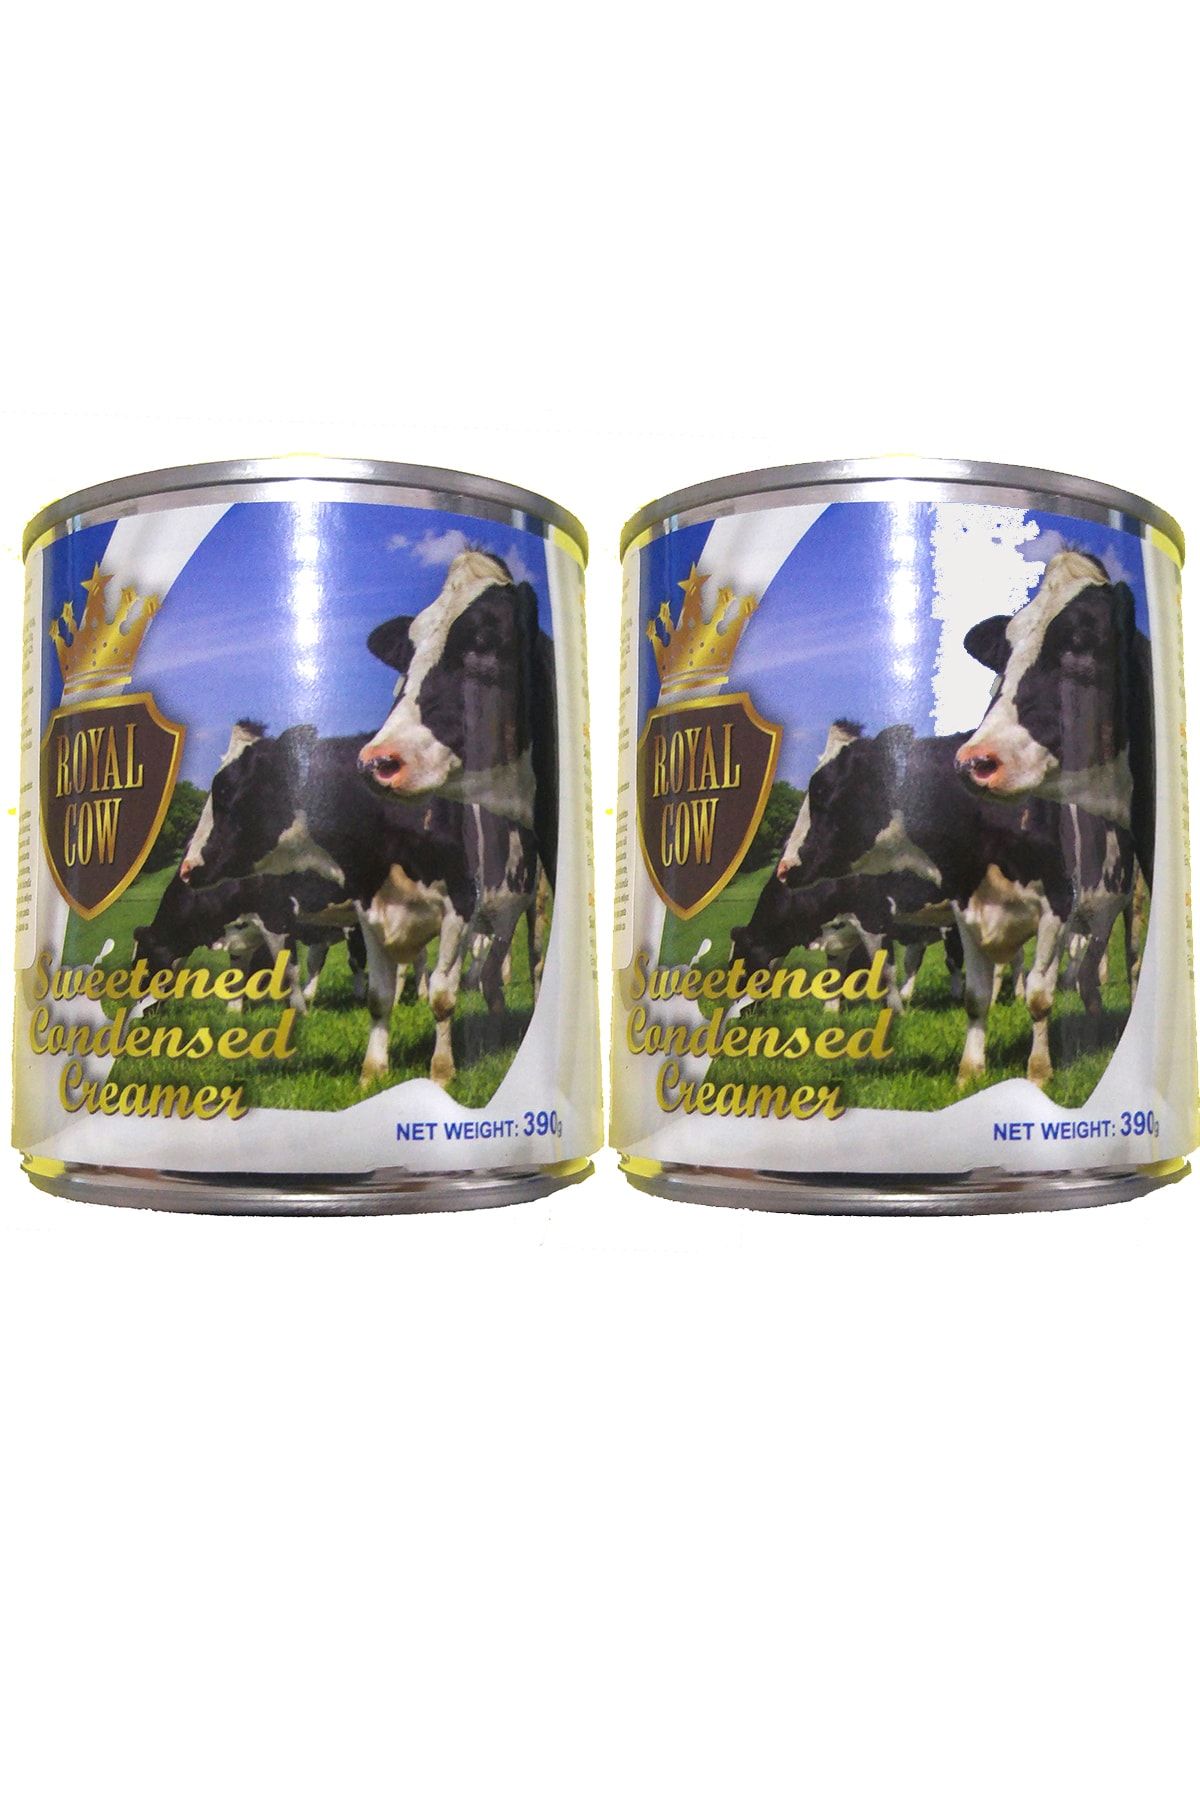 Royal Cow Sweetened Condensed Milk Şekerli Yoğun Süt Tatlandırılmış Yoğunlaştırılmış 390gr x 2 Adet